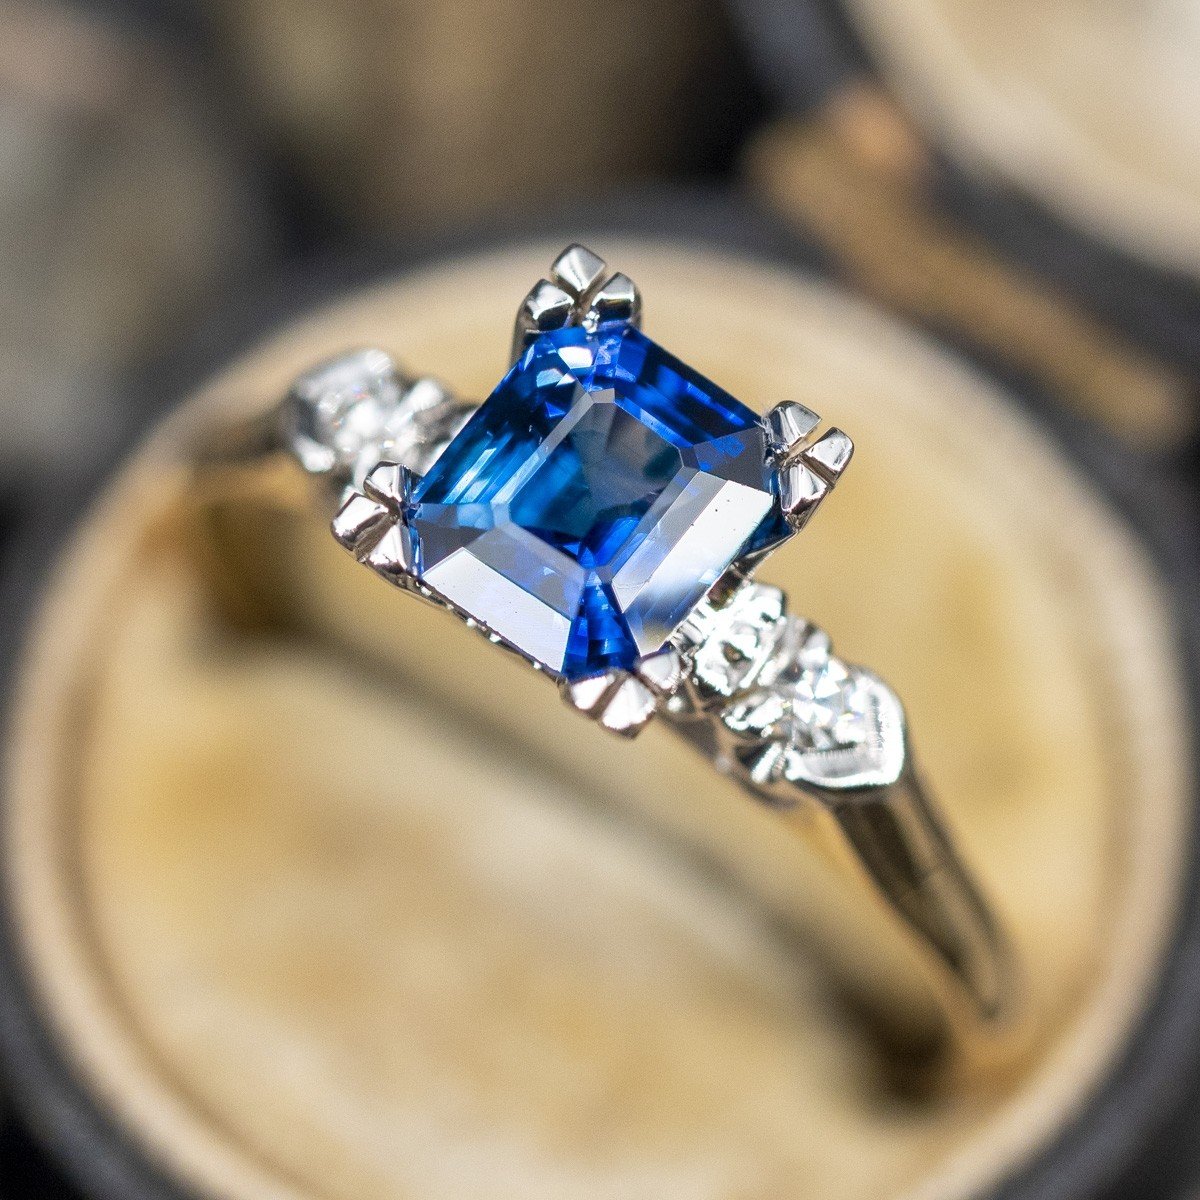 Blue sapphire engagement ring, Odisea | sillyshinydiamonds